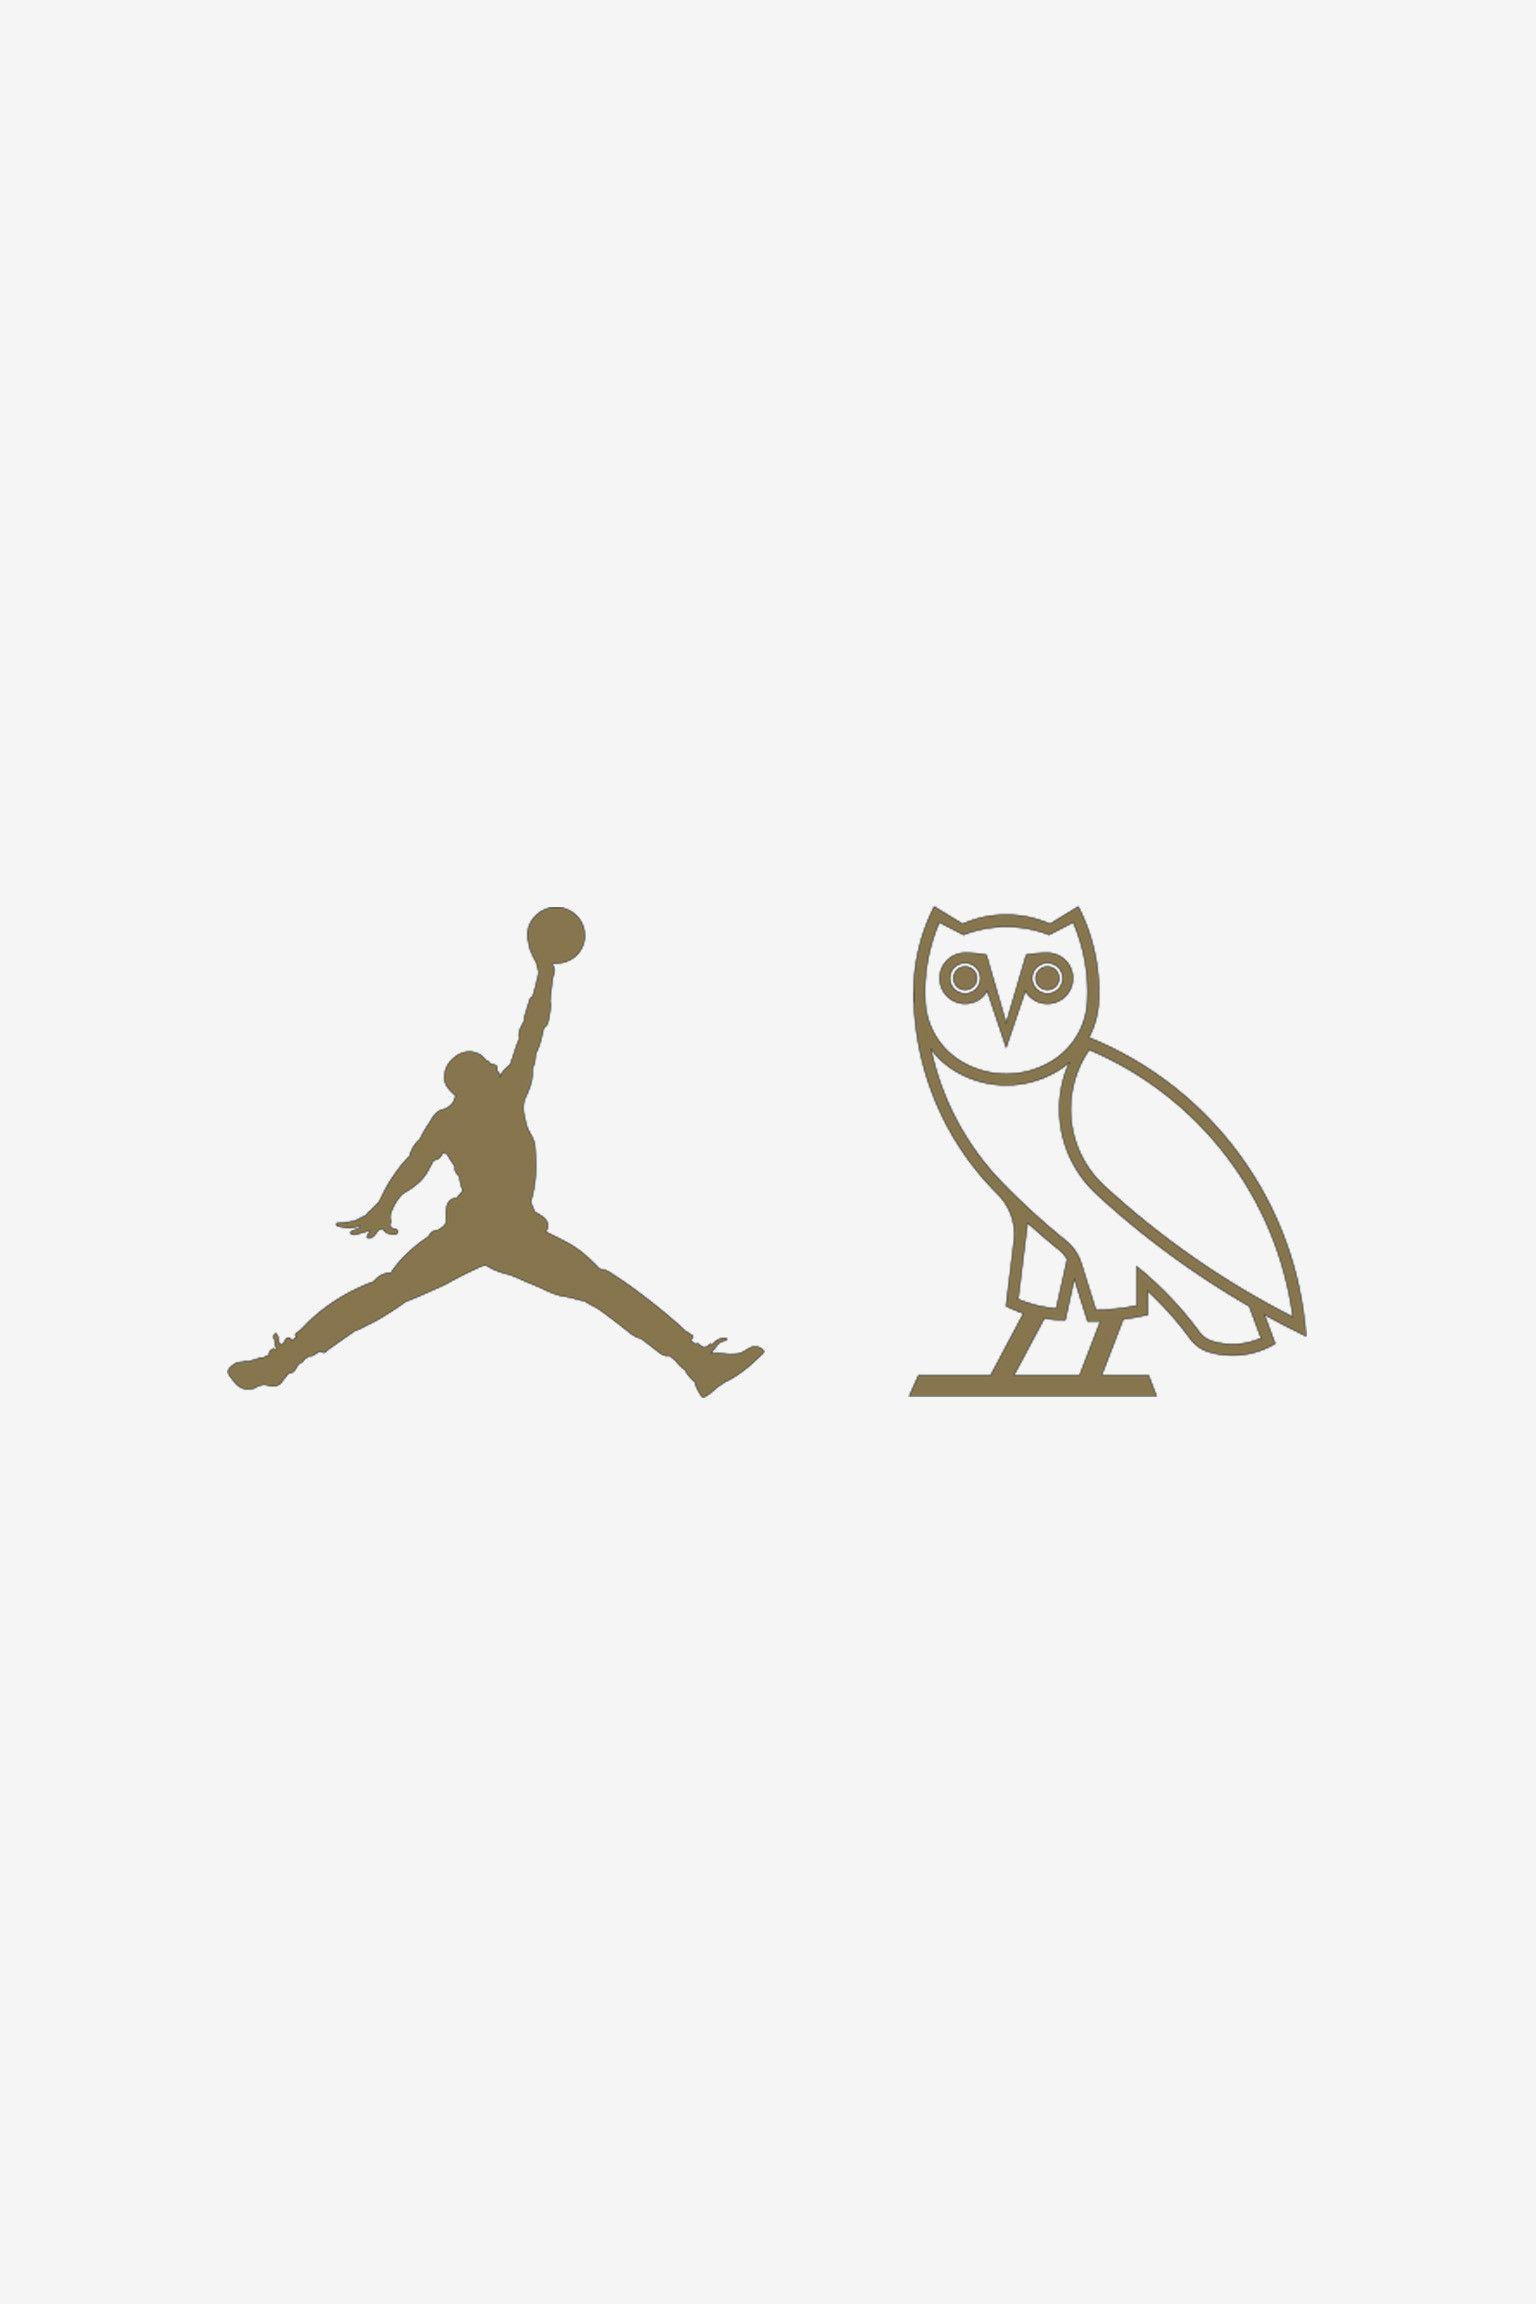 Drake Owl Logo - Drake Ovo Wallpaper (74+ images)